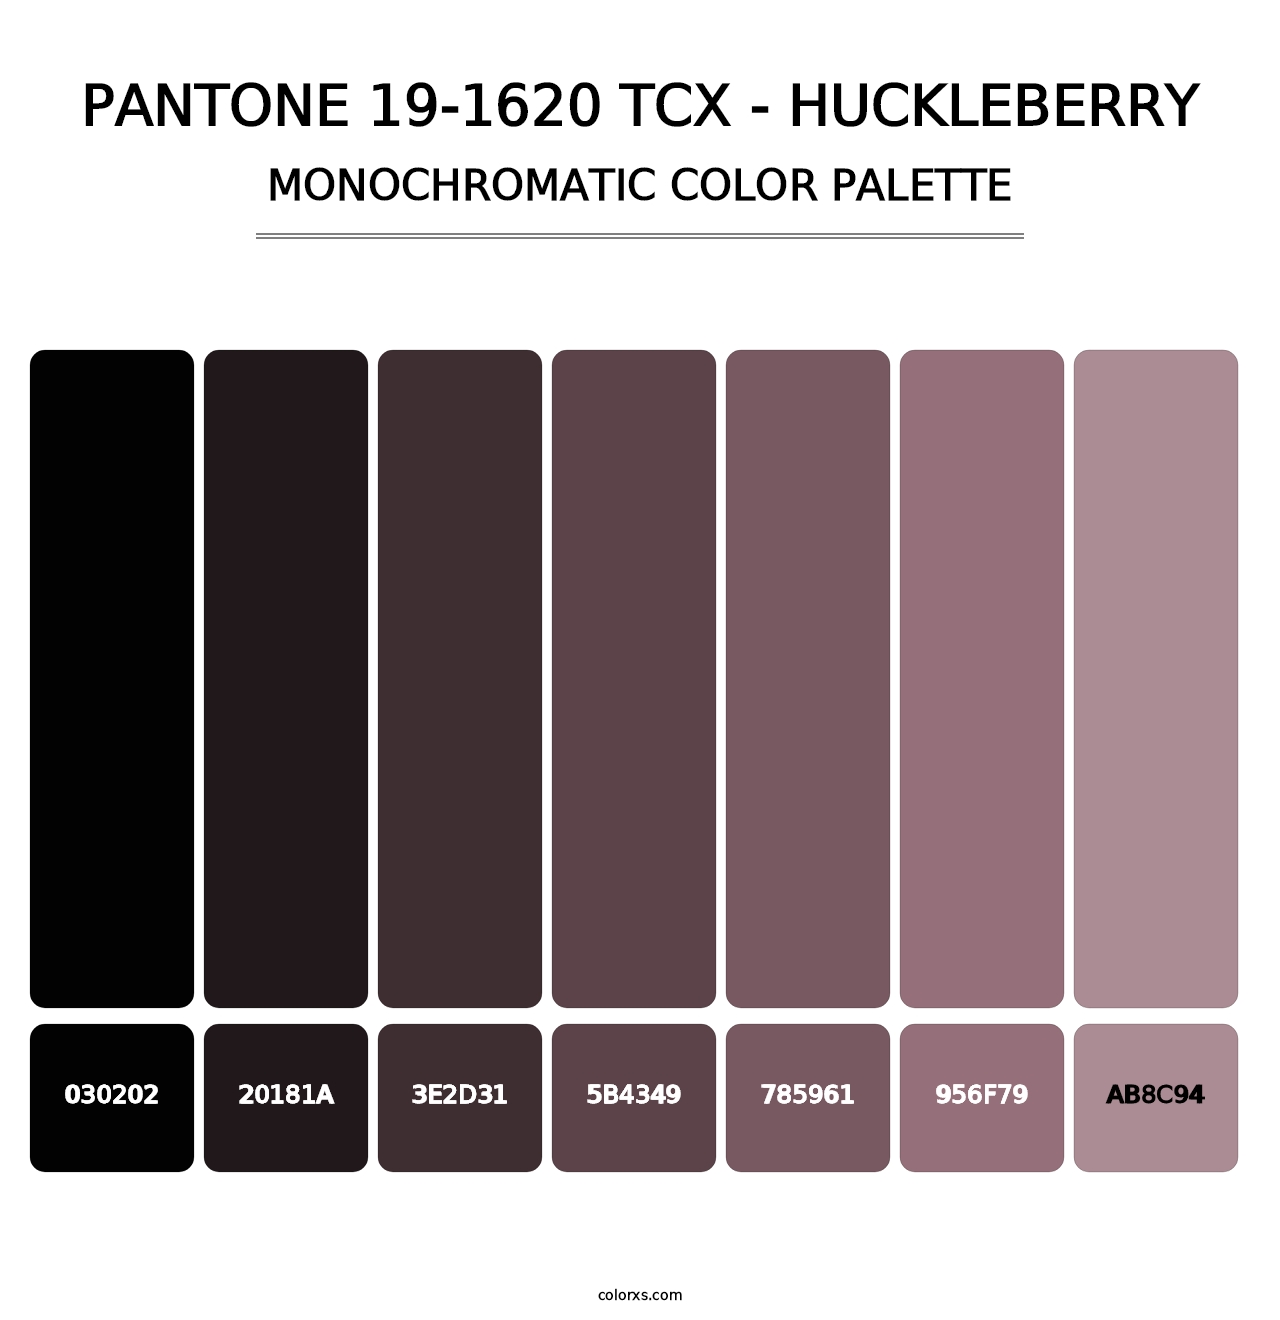 PANTONE 19-1620 TCX - Huckleberry - Monochromatic Color Palette